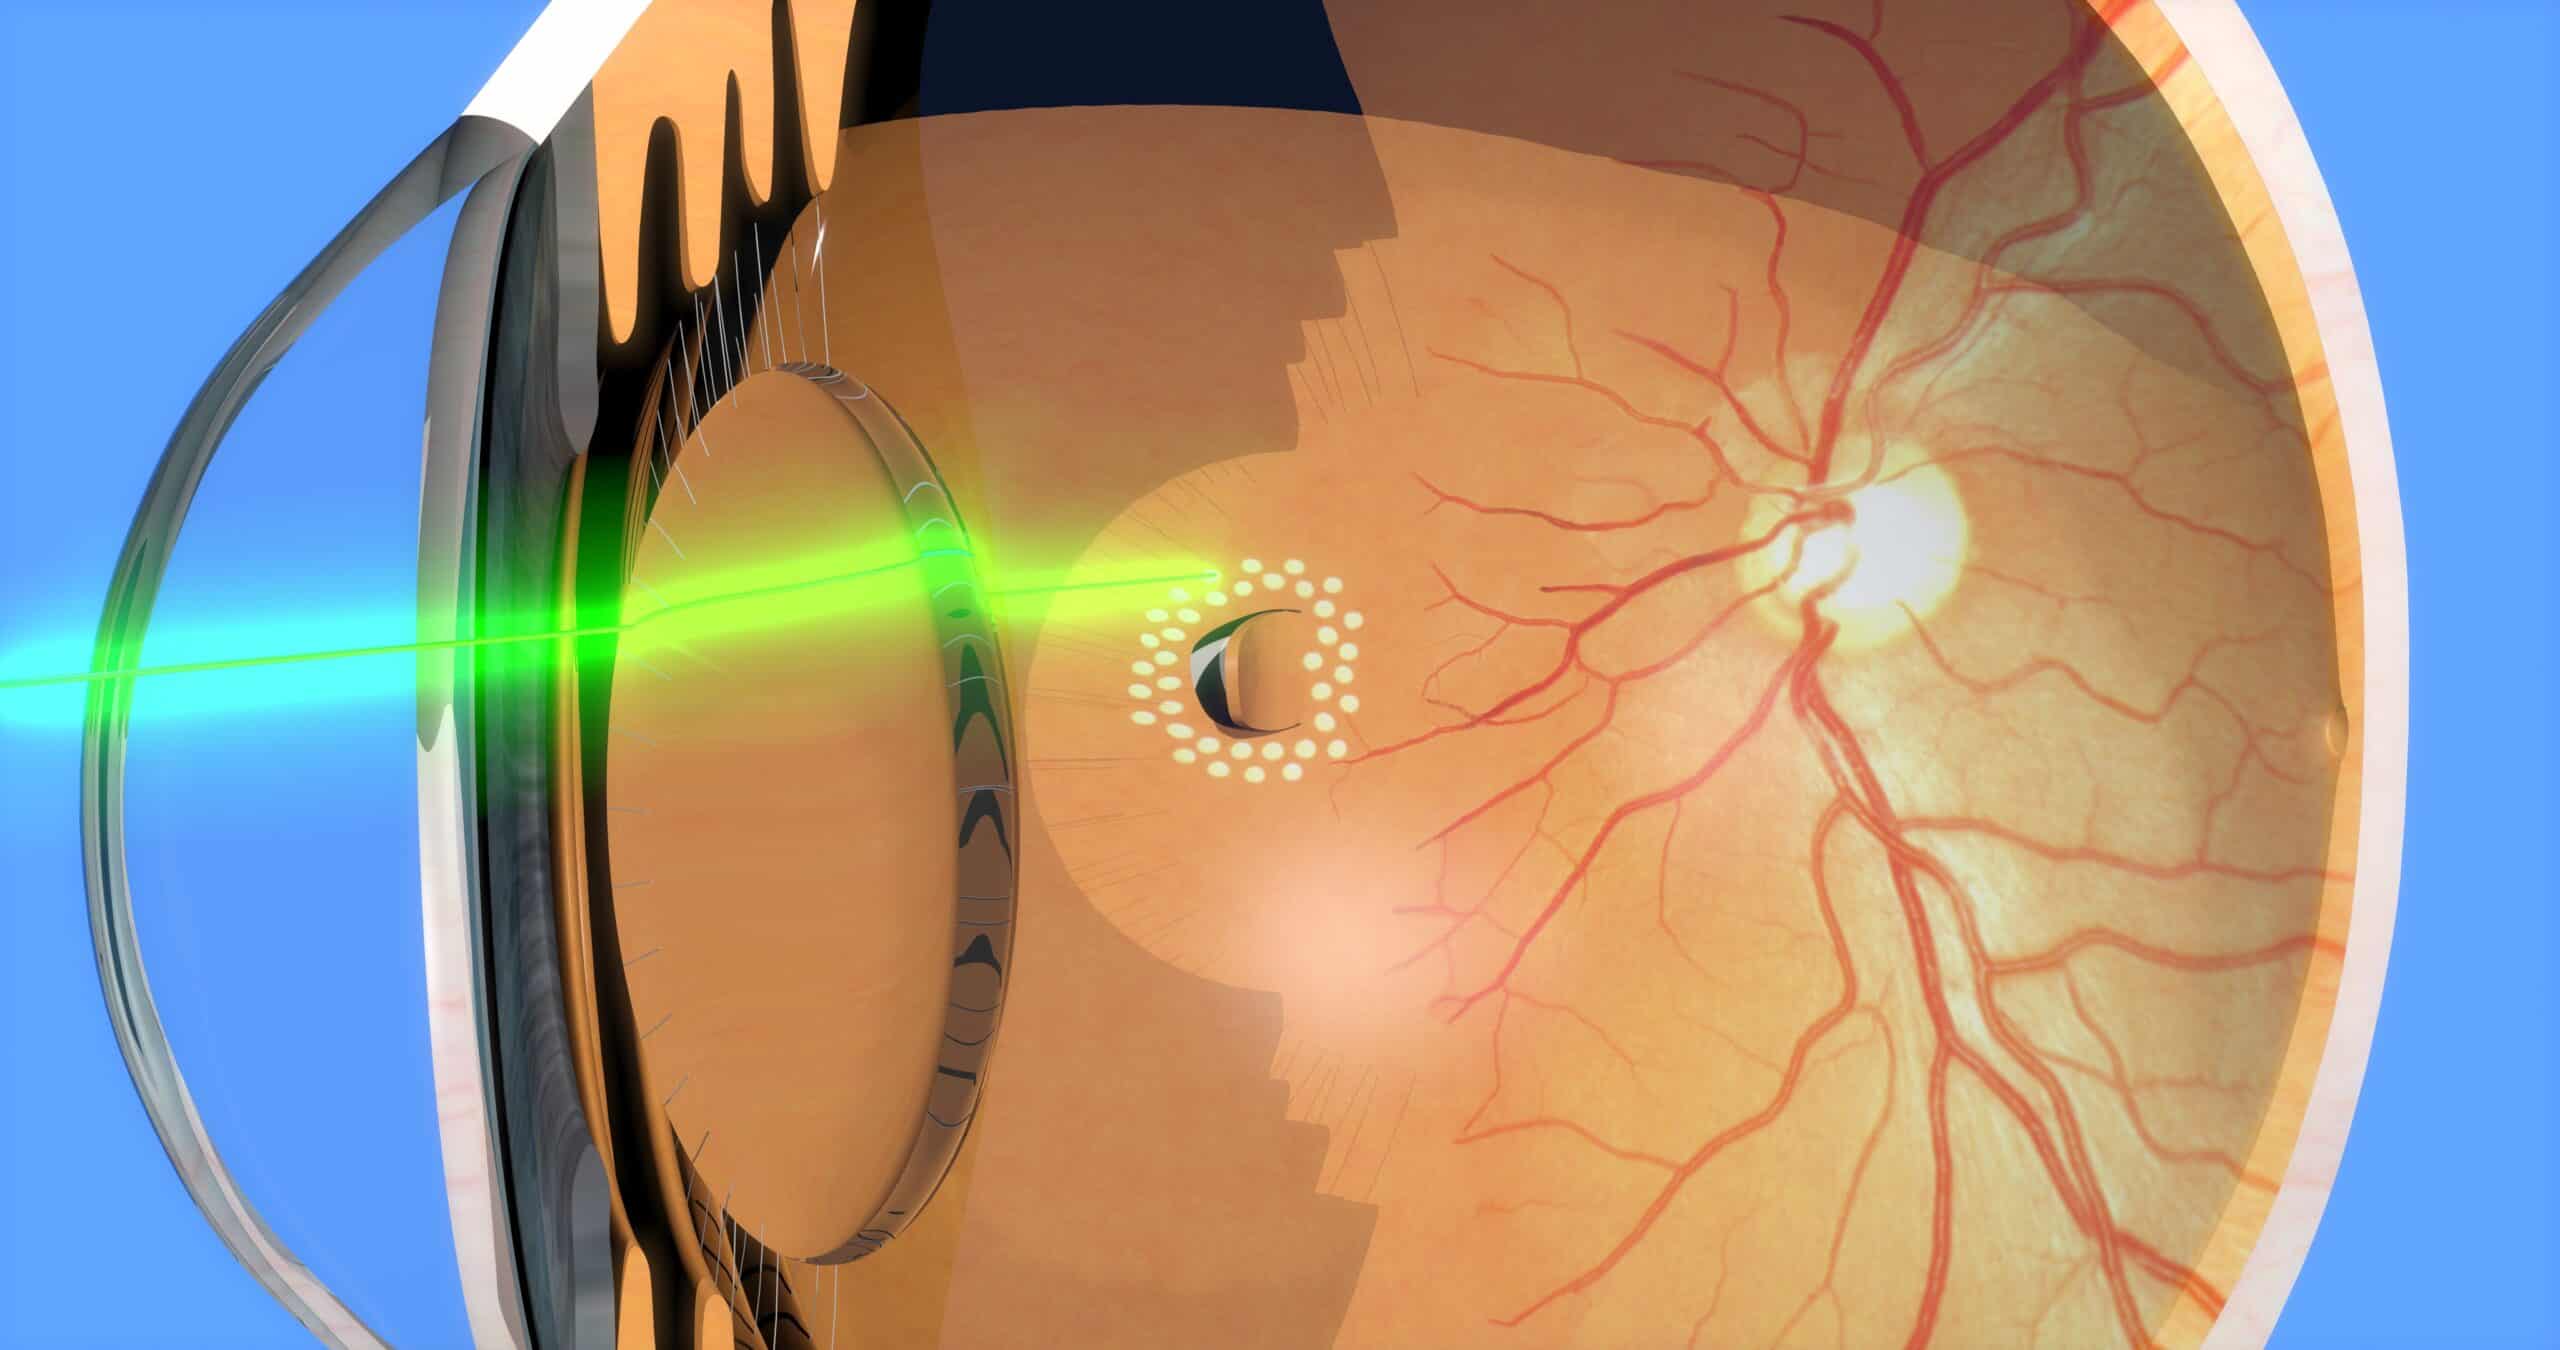 Retinal laser